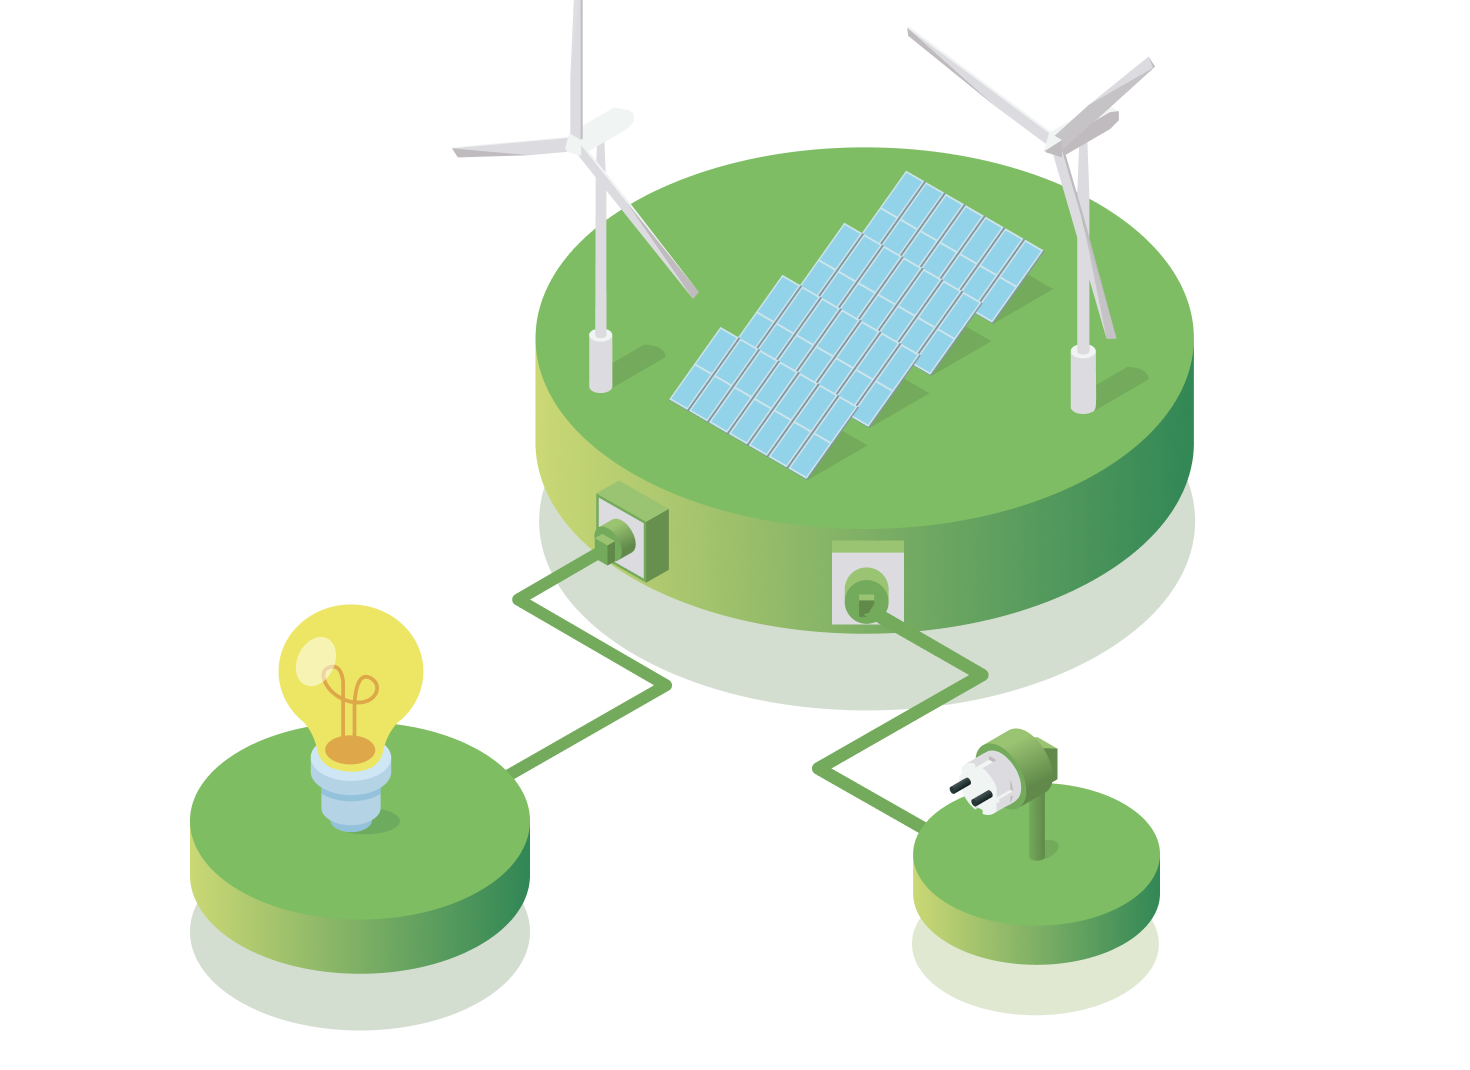 Pannelli solari e pale eoliche che danno energia ad una lampadina e ad una presa